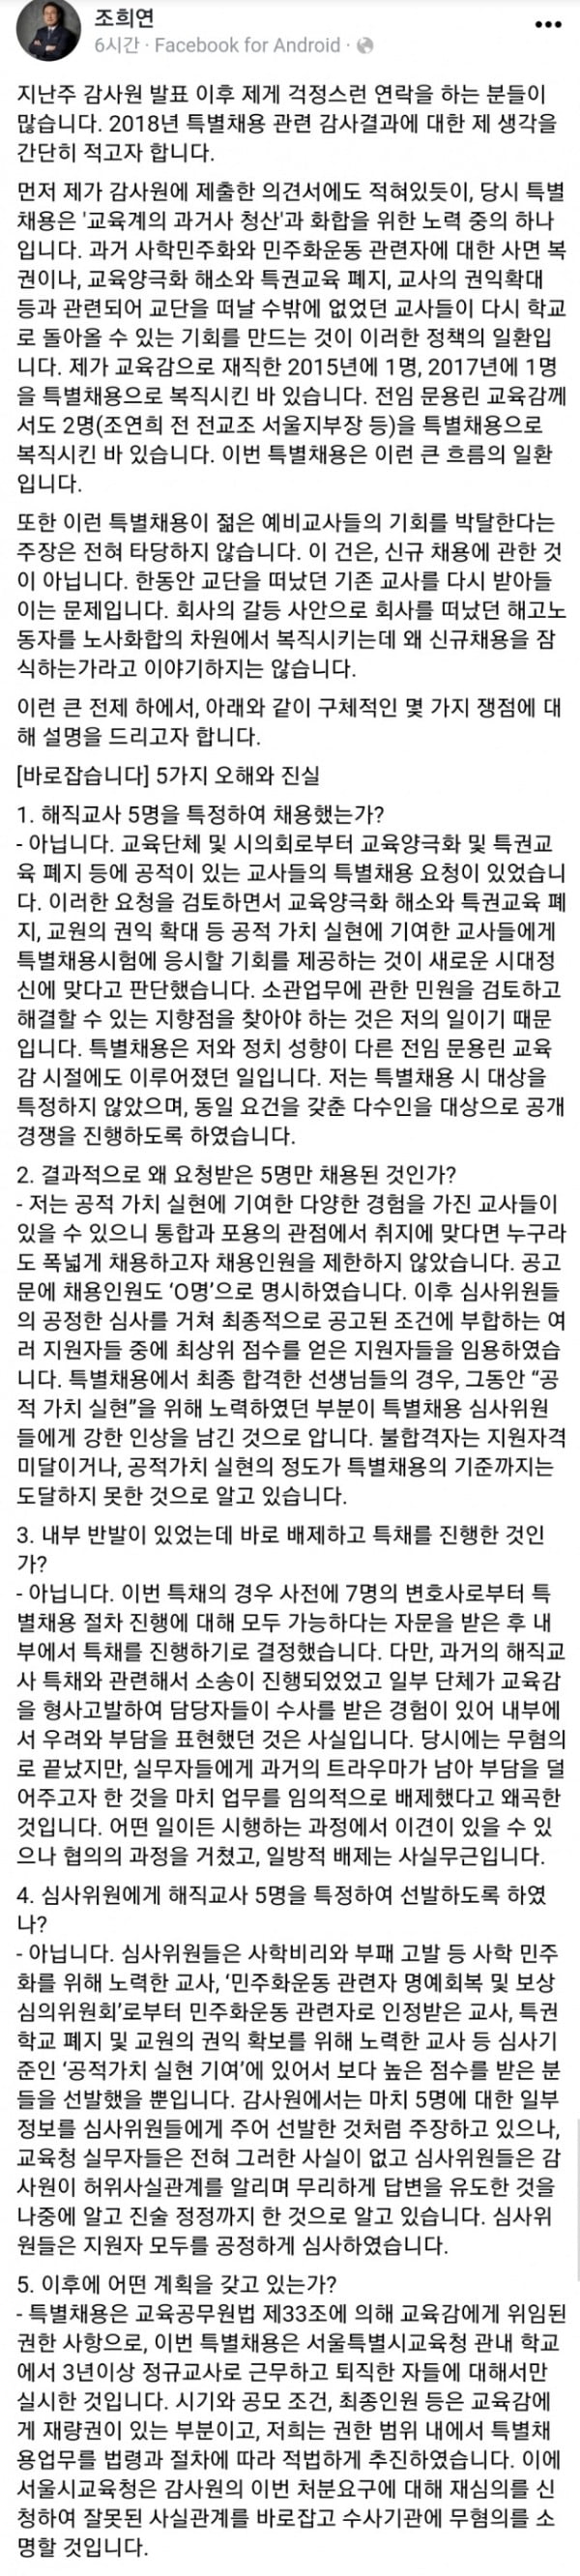 조희연 서울교육감 페이스북 캡처.